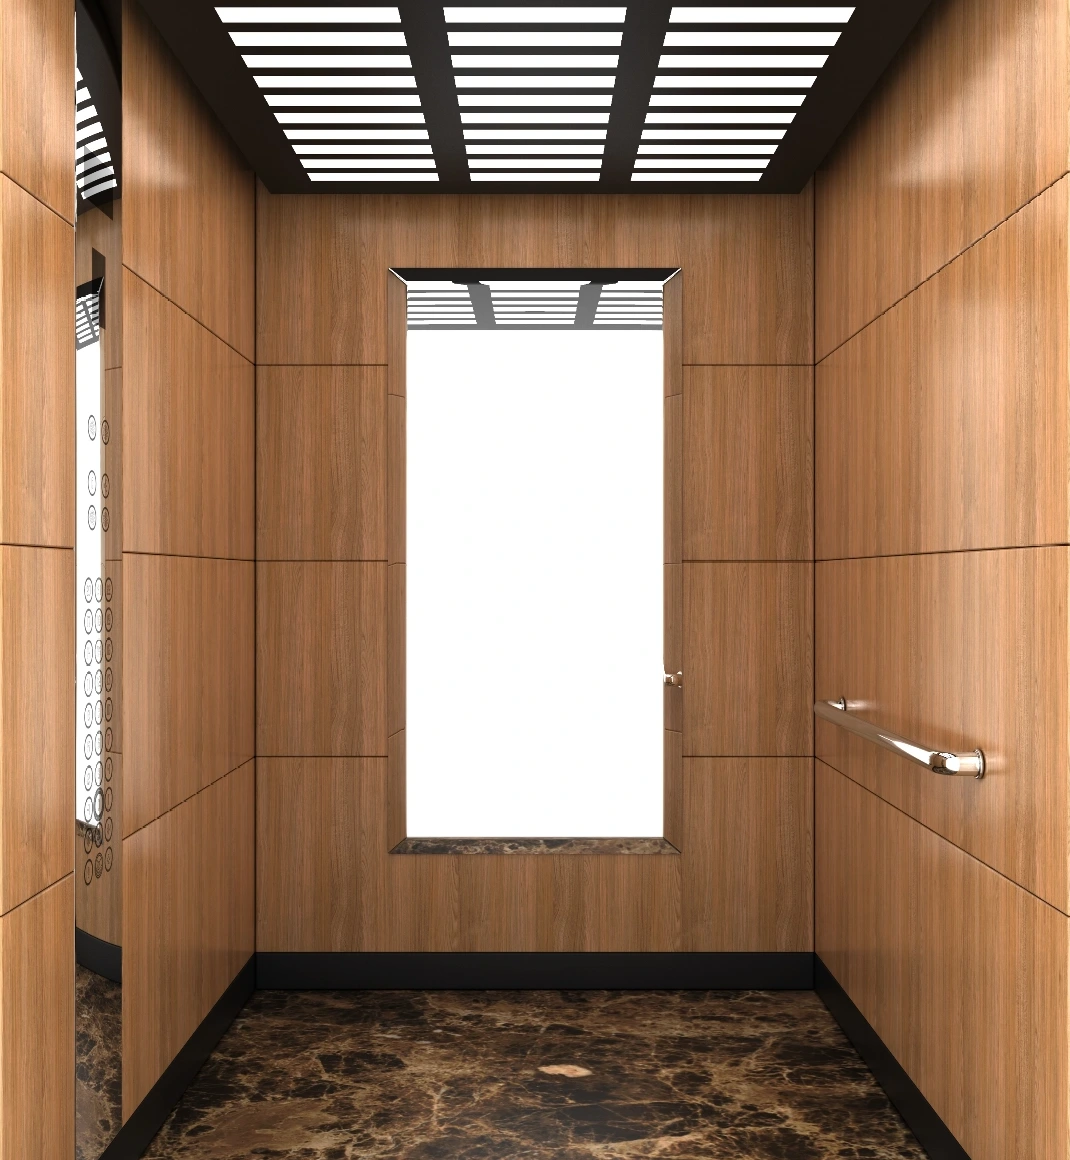 En hisskorg som utstrålar en känsla av elegans och klass, med en stilren träinredning som är både tidlös och modern.